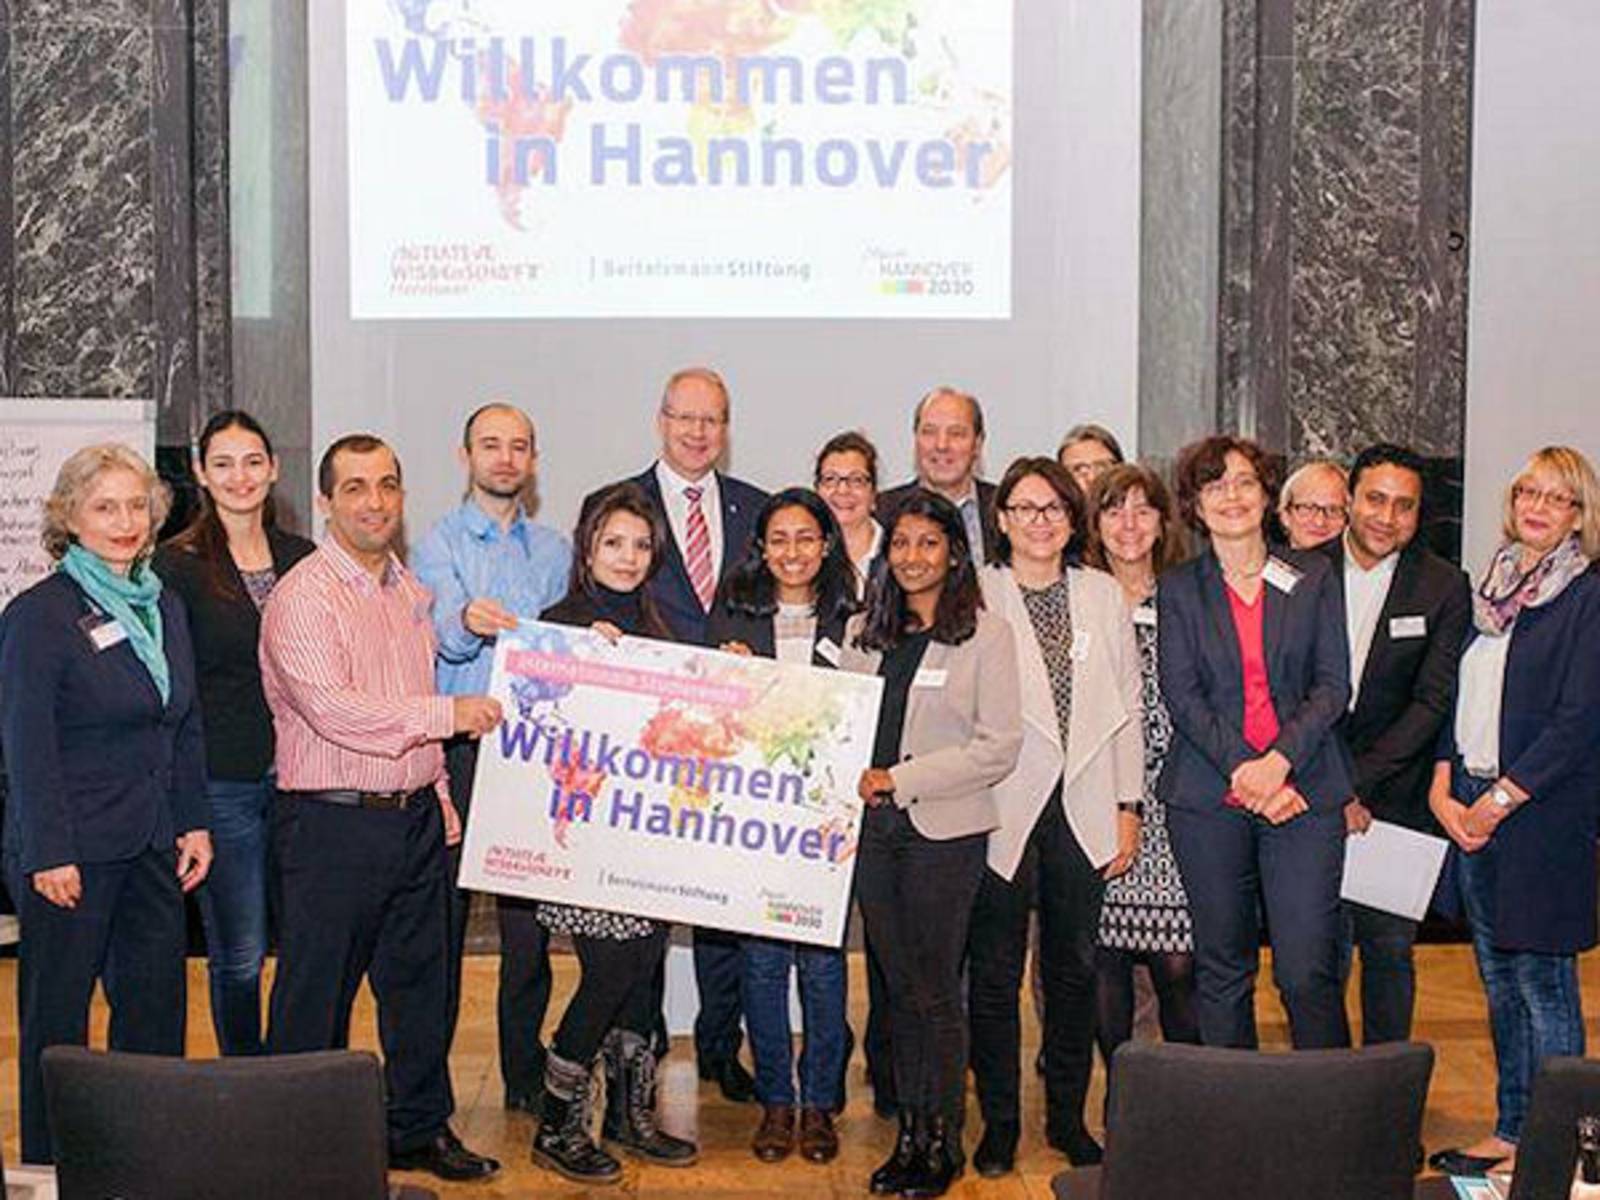 Gruppenbild mit dem Slogan "Willkommen in Hannover"